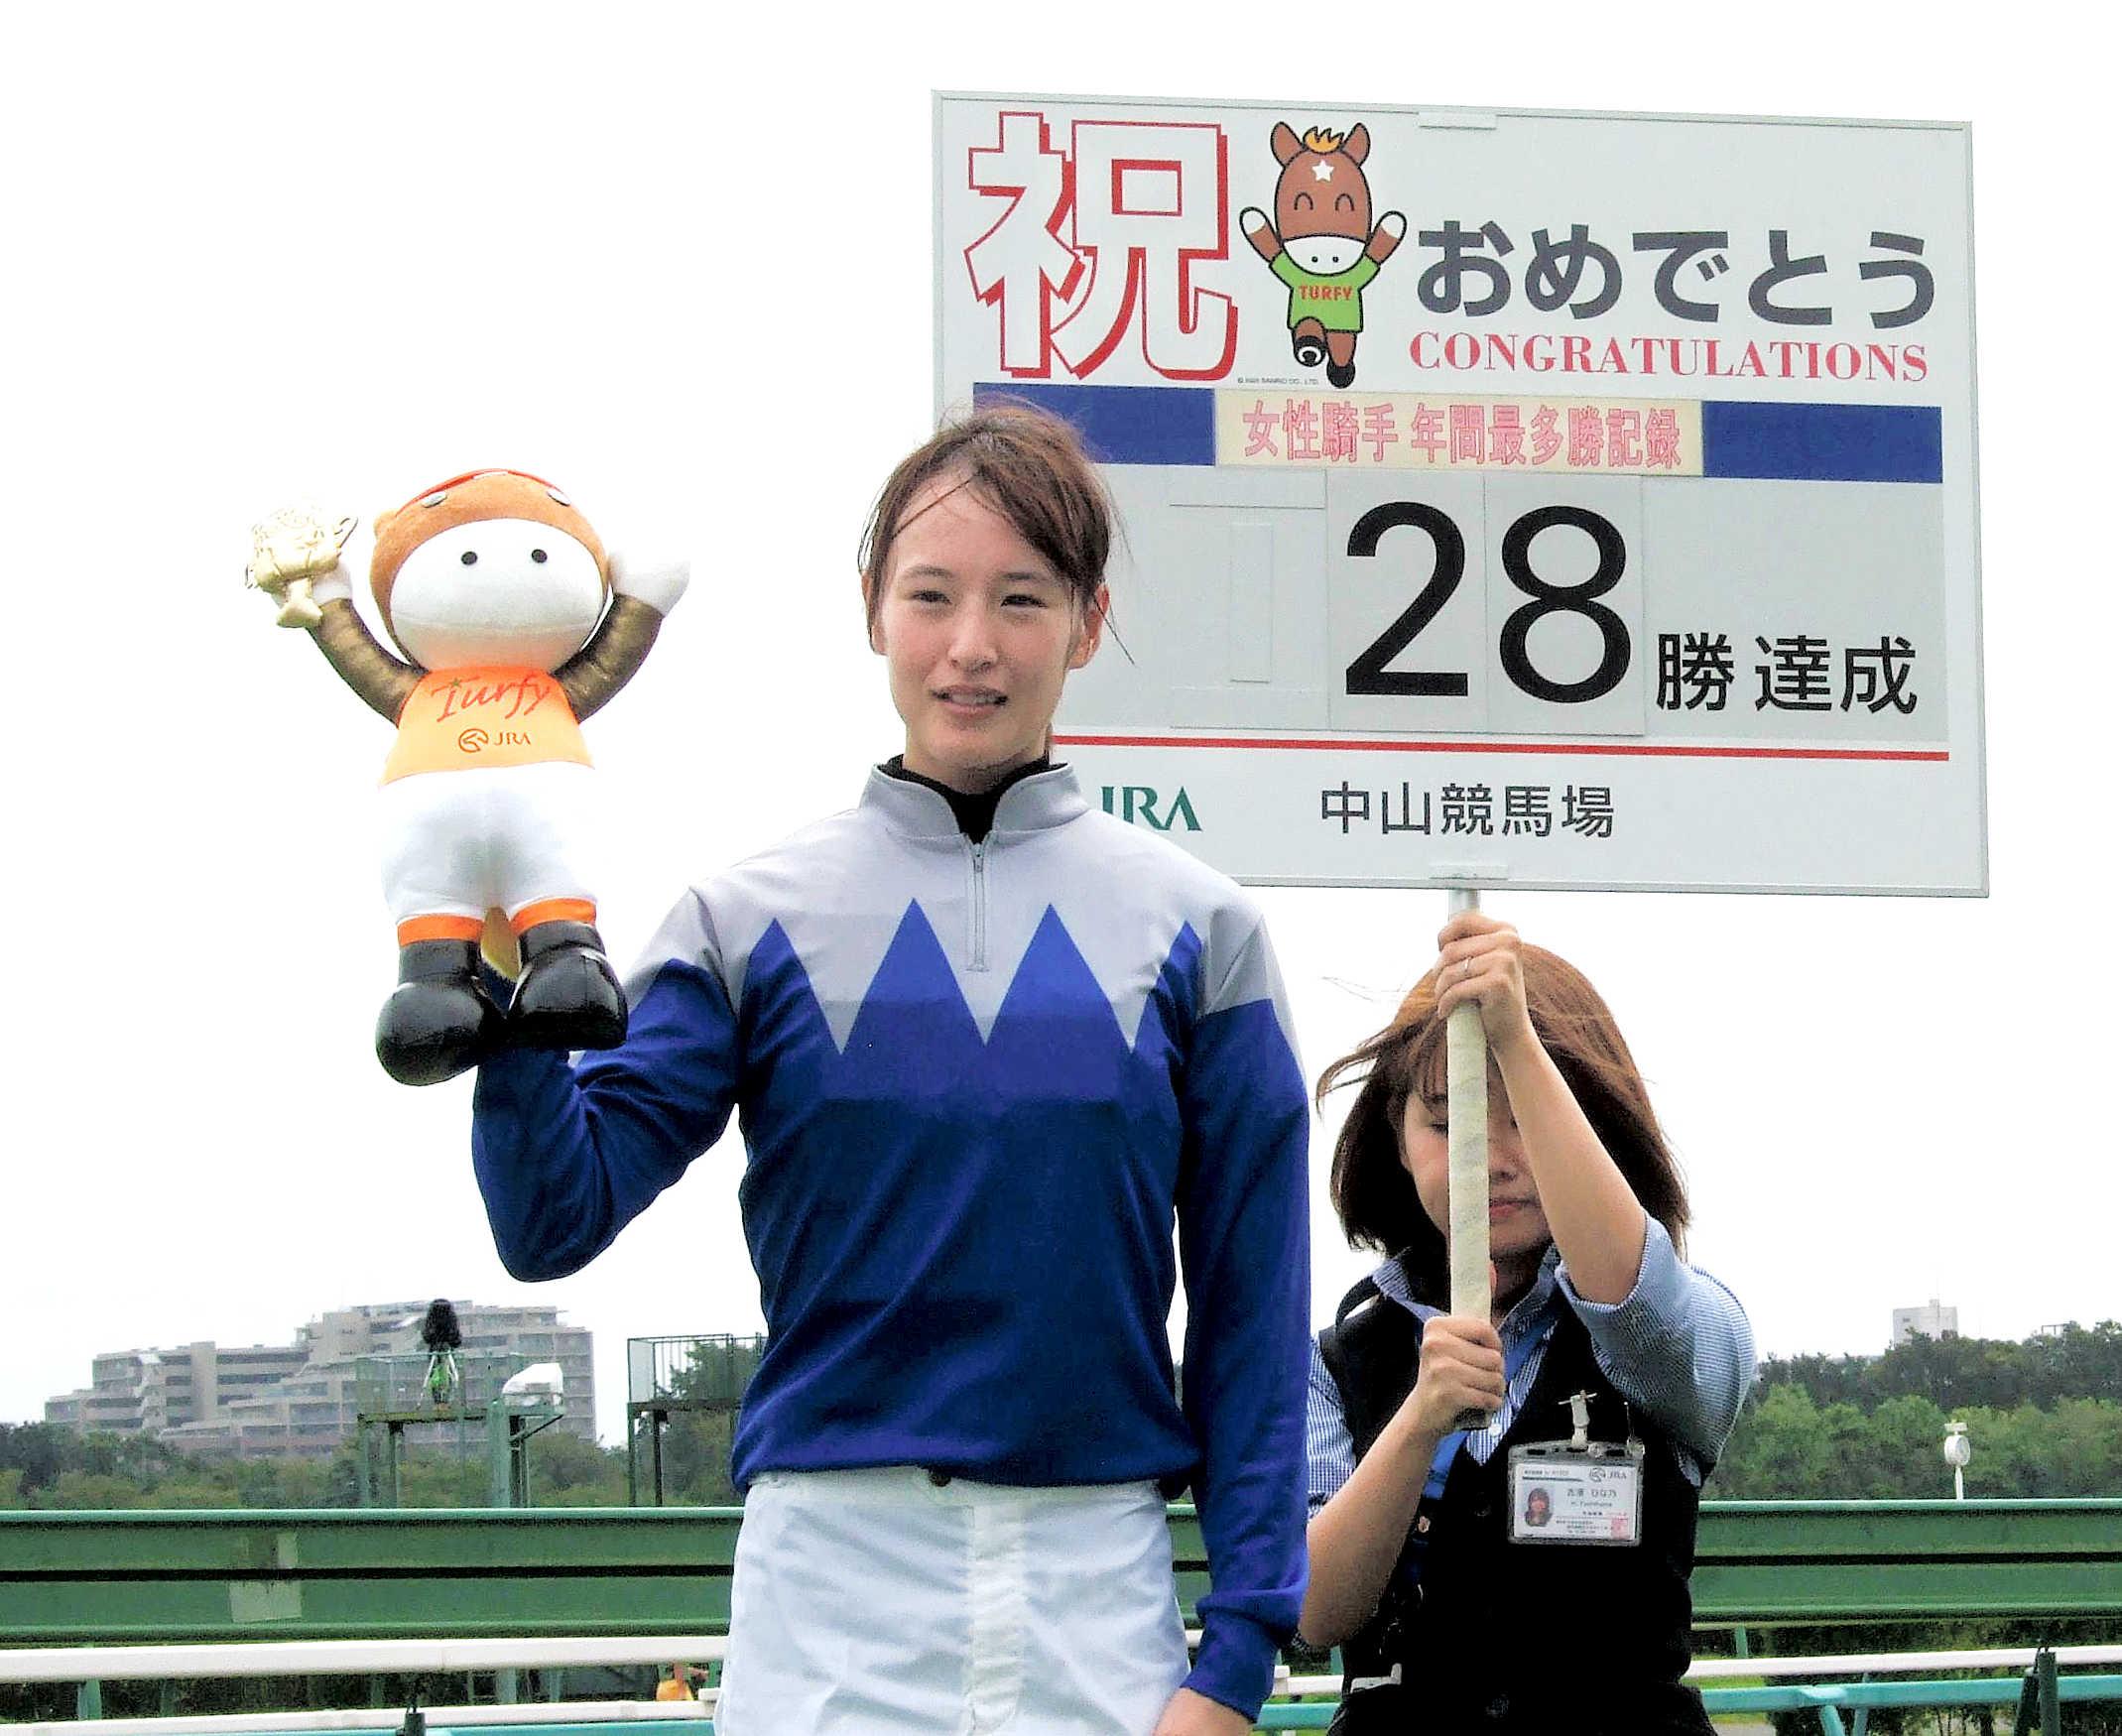 菜七子２８勝 ＪＲＡ女性騎手年間最多勝利記録を３年連続更新「毎年 